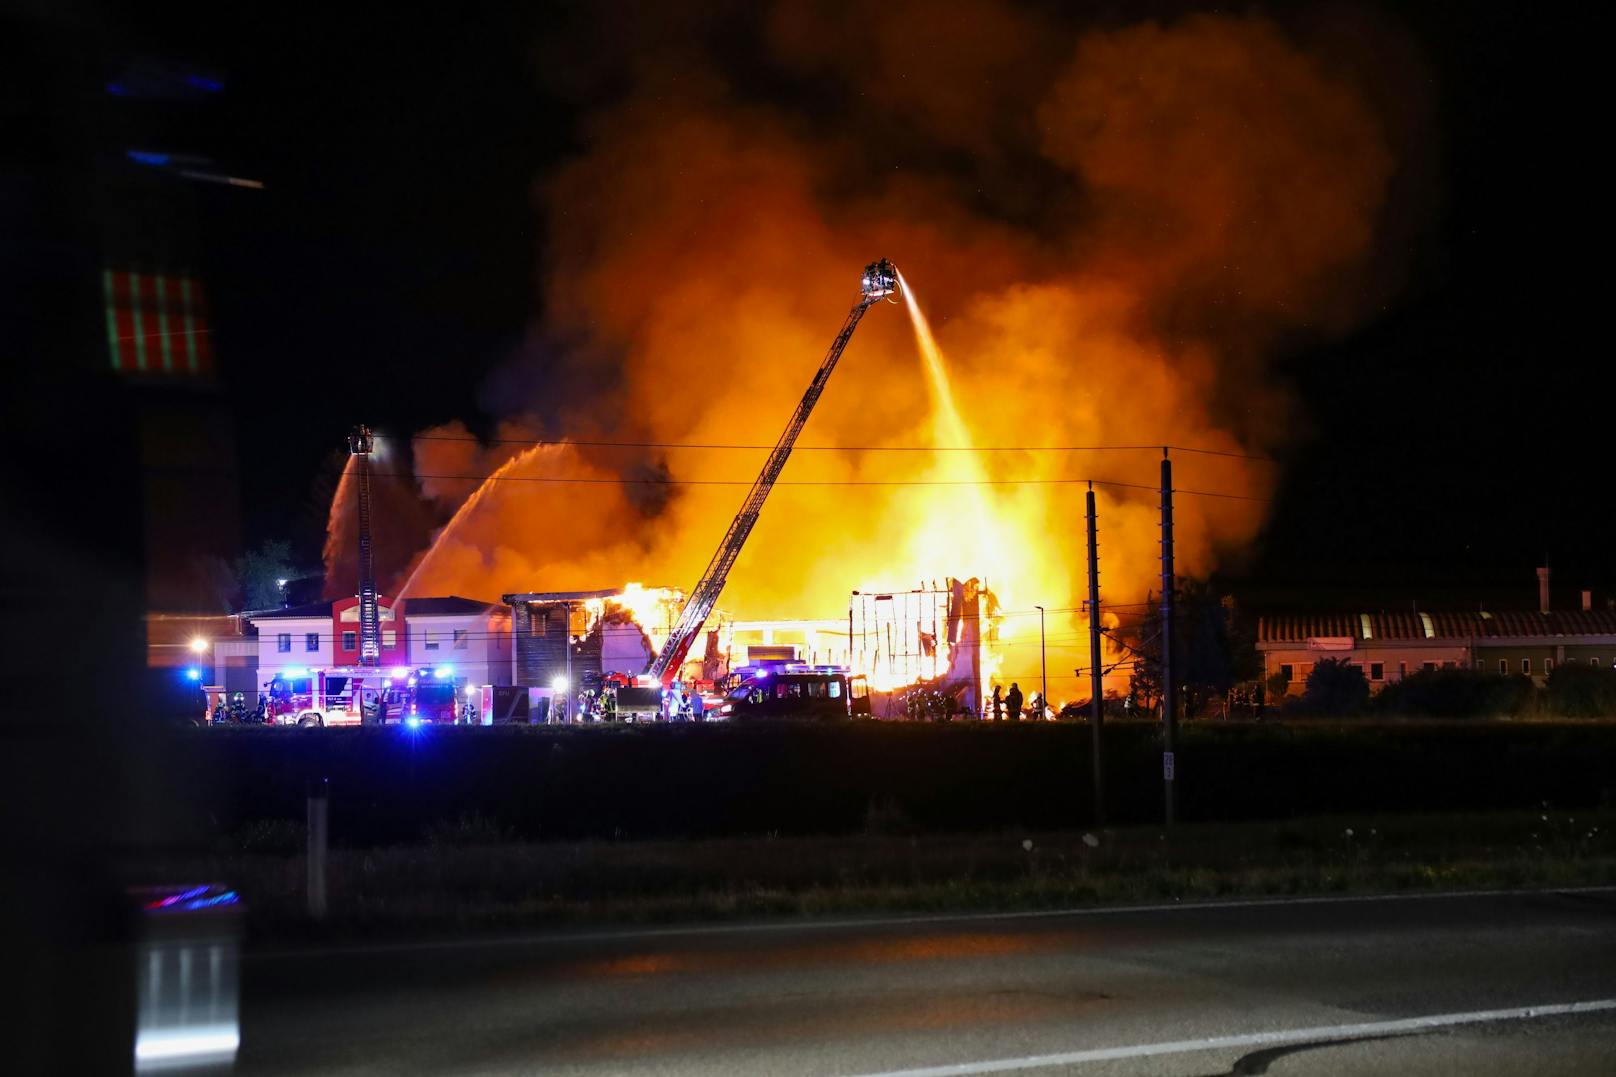 23 Feuerwehren standen am späten Dienstagabend und in der Nacht auf Mittwoch bei einem Großbrand eines Unternehmens im Gemeindegebiet von Taufkirchen an der Trattnach (Bezirk Grieskirchen) im Einsatz.